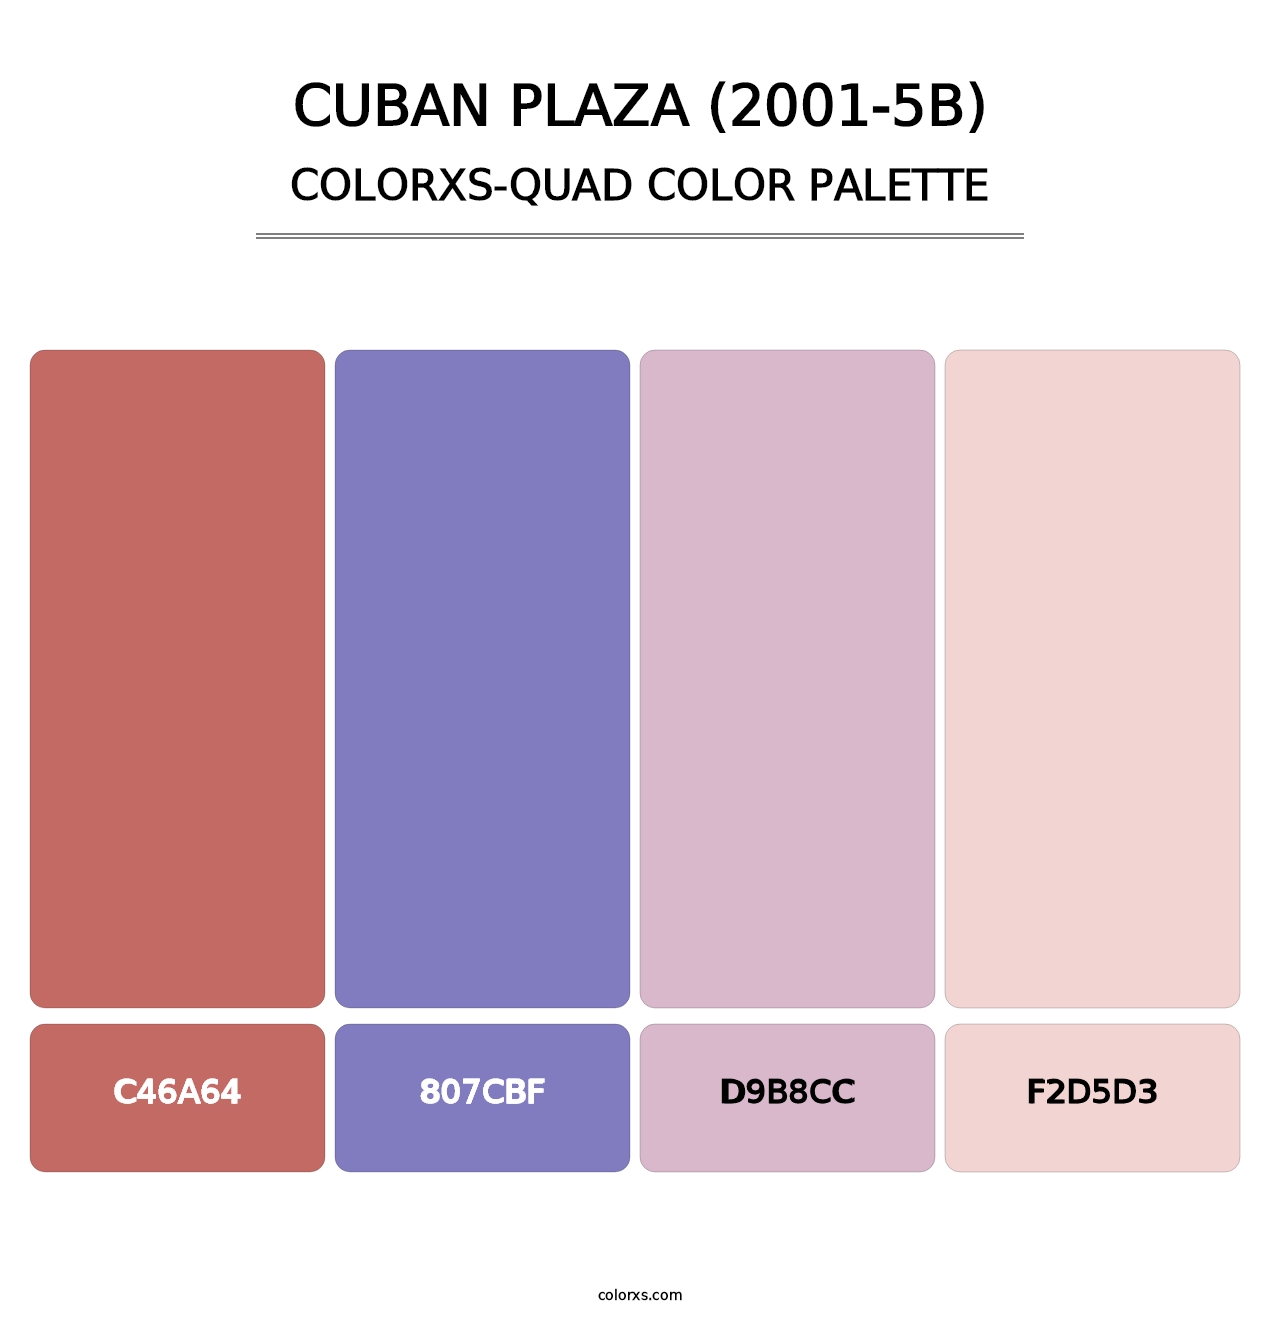 Cuban Plaza (2001-5B) - Colorxs Quad Palette